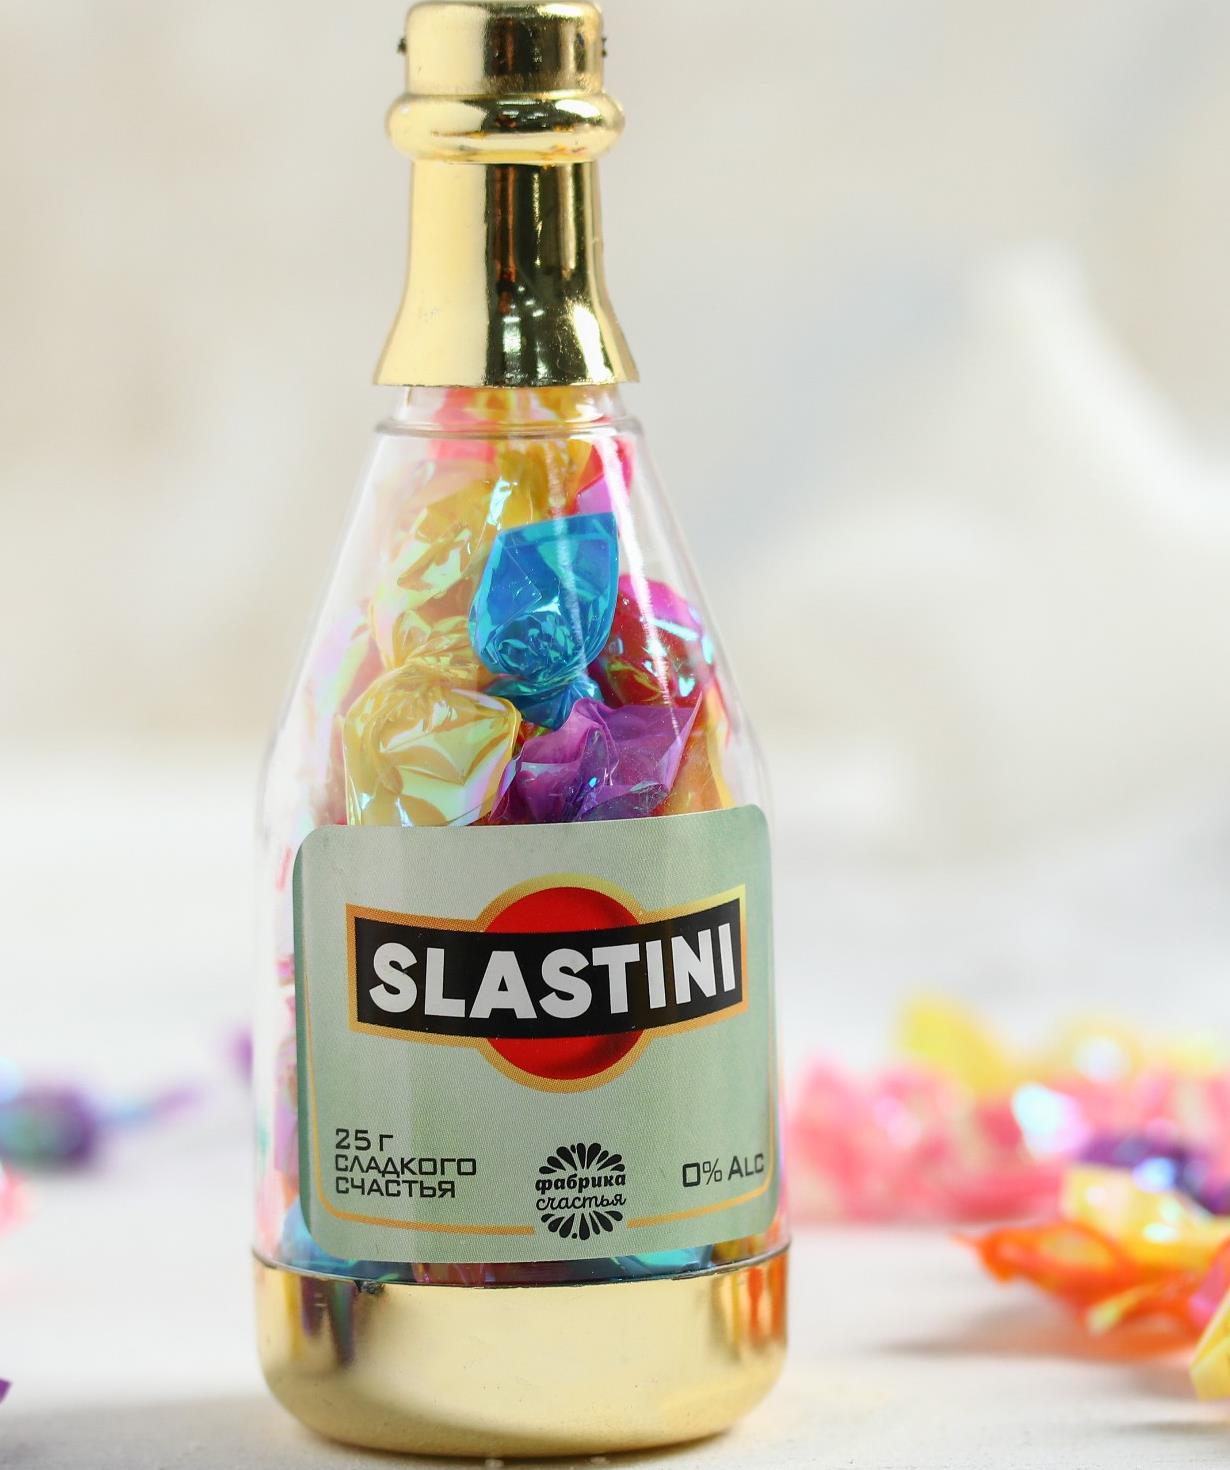 Lollipops `Jpit.am` in a bottle, Slastini